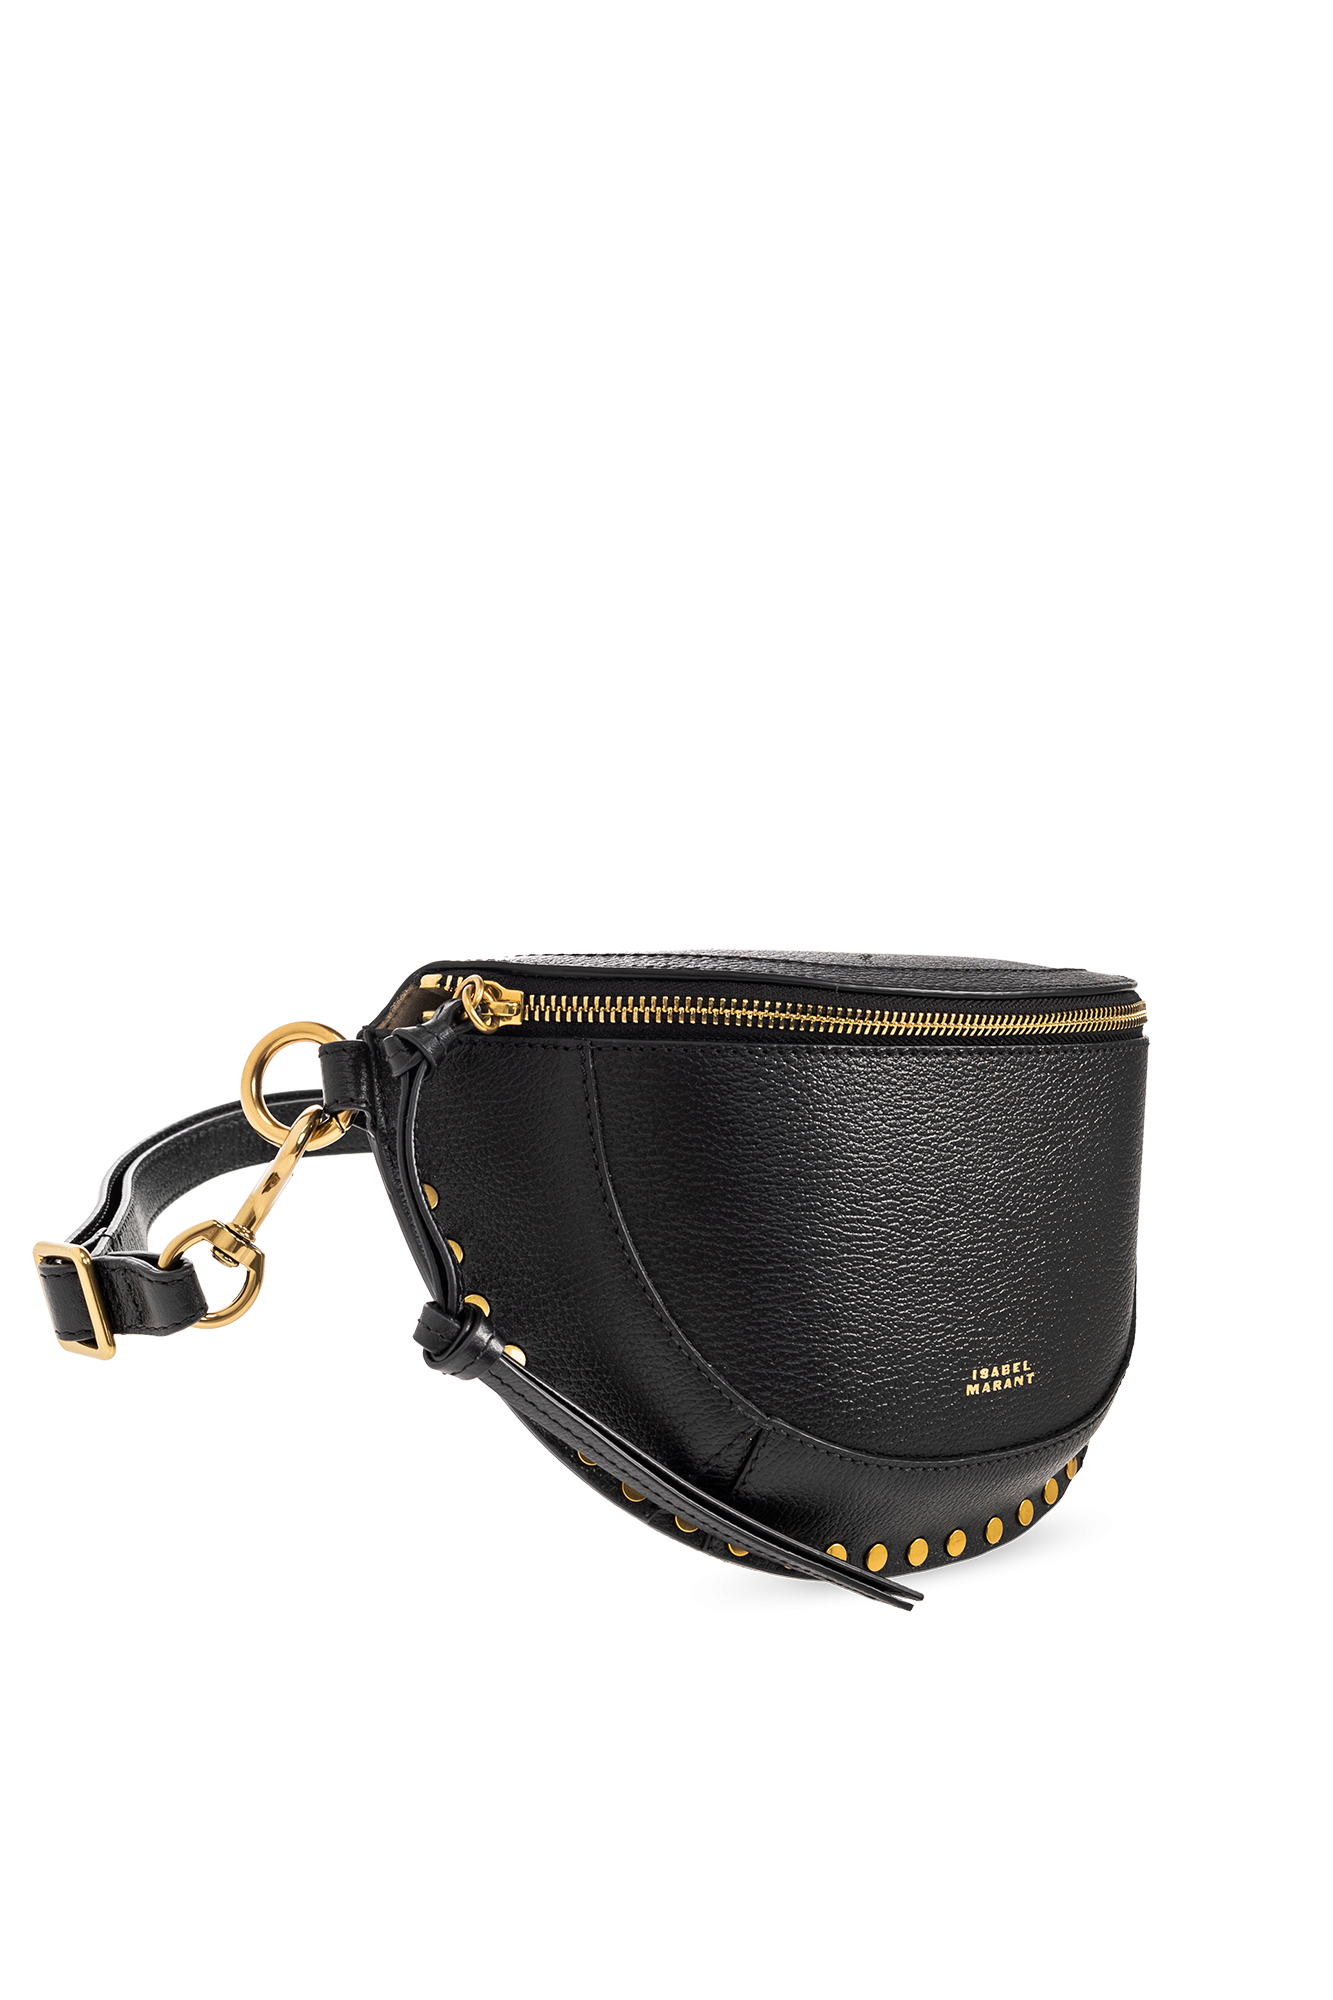 Isabel Marant ‘Skano’ shoulder black bag in leather